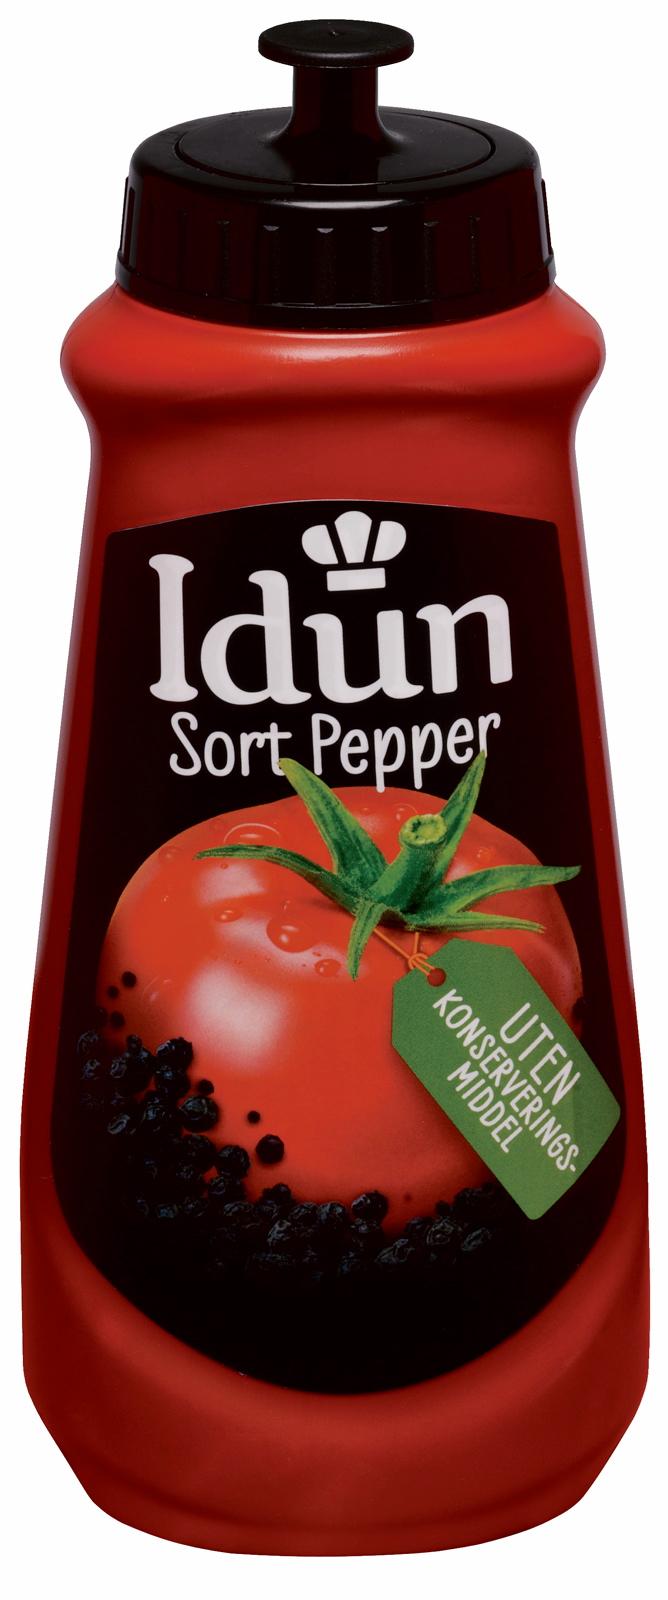 Idun tomatketchup med sort pepper solgte 370.000 flasker det første året. I år er det kun blitt solgt 40.000 flasker.